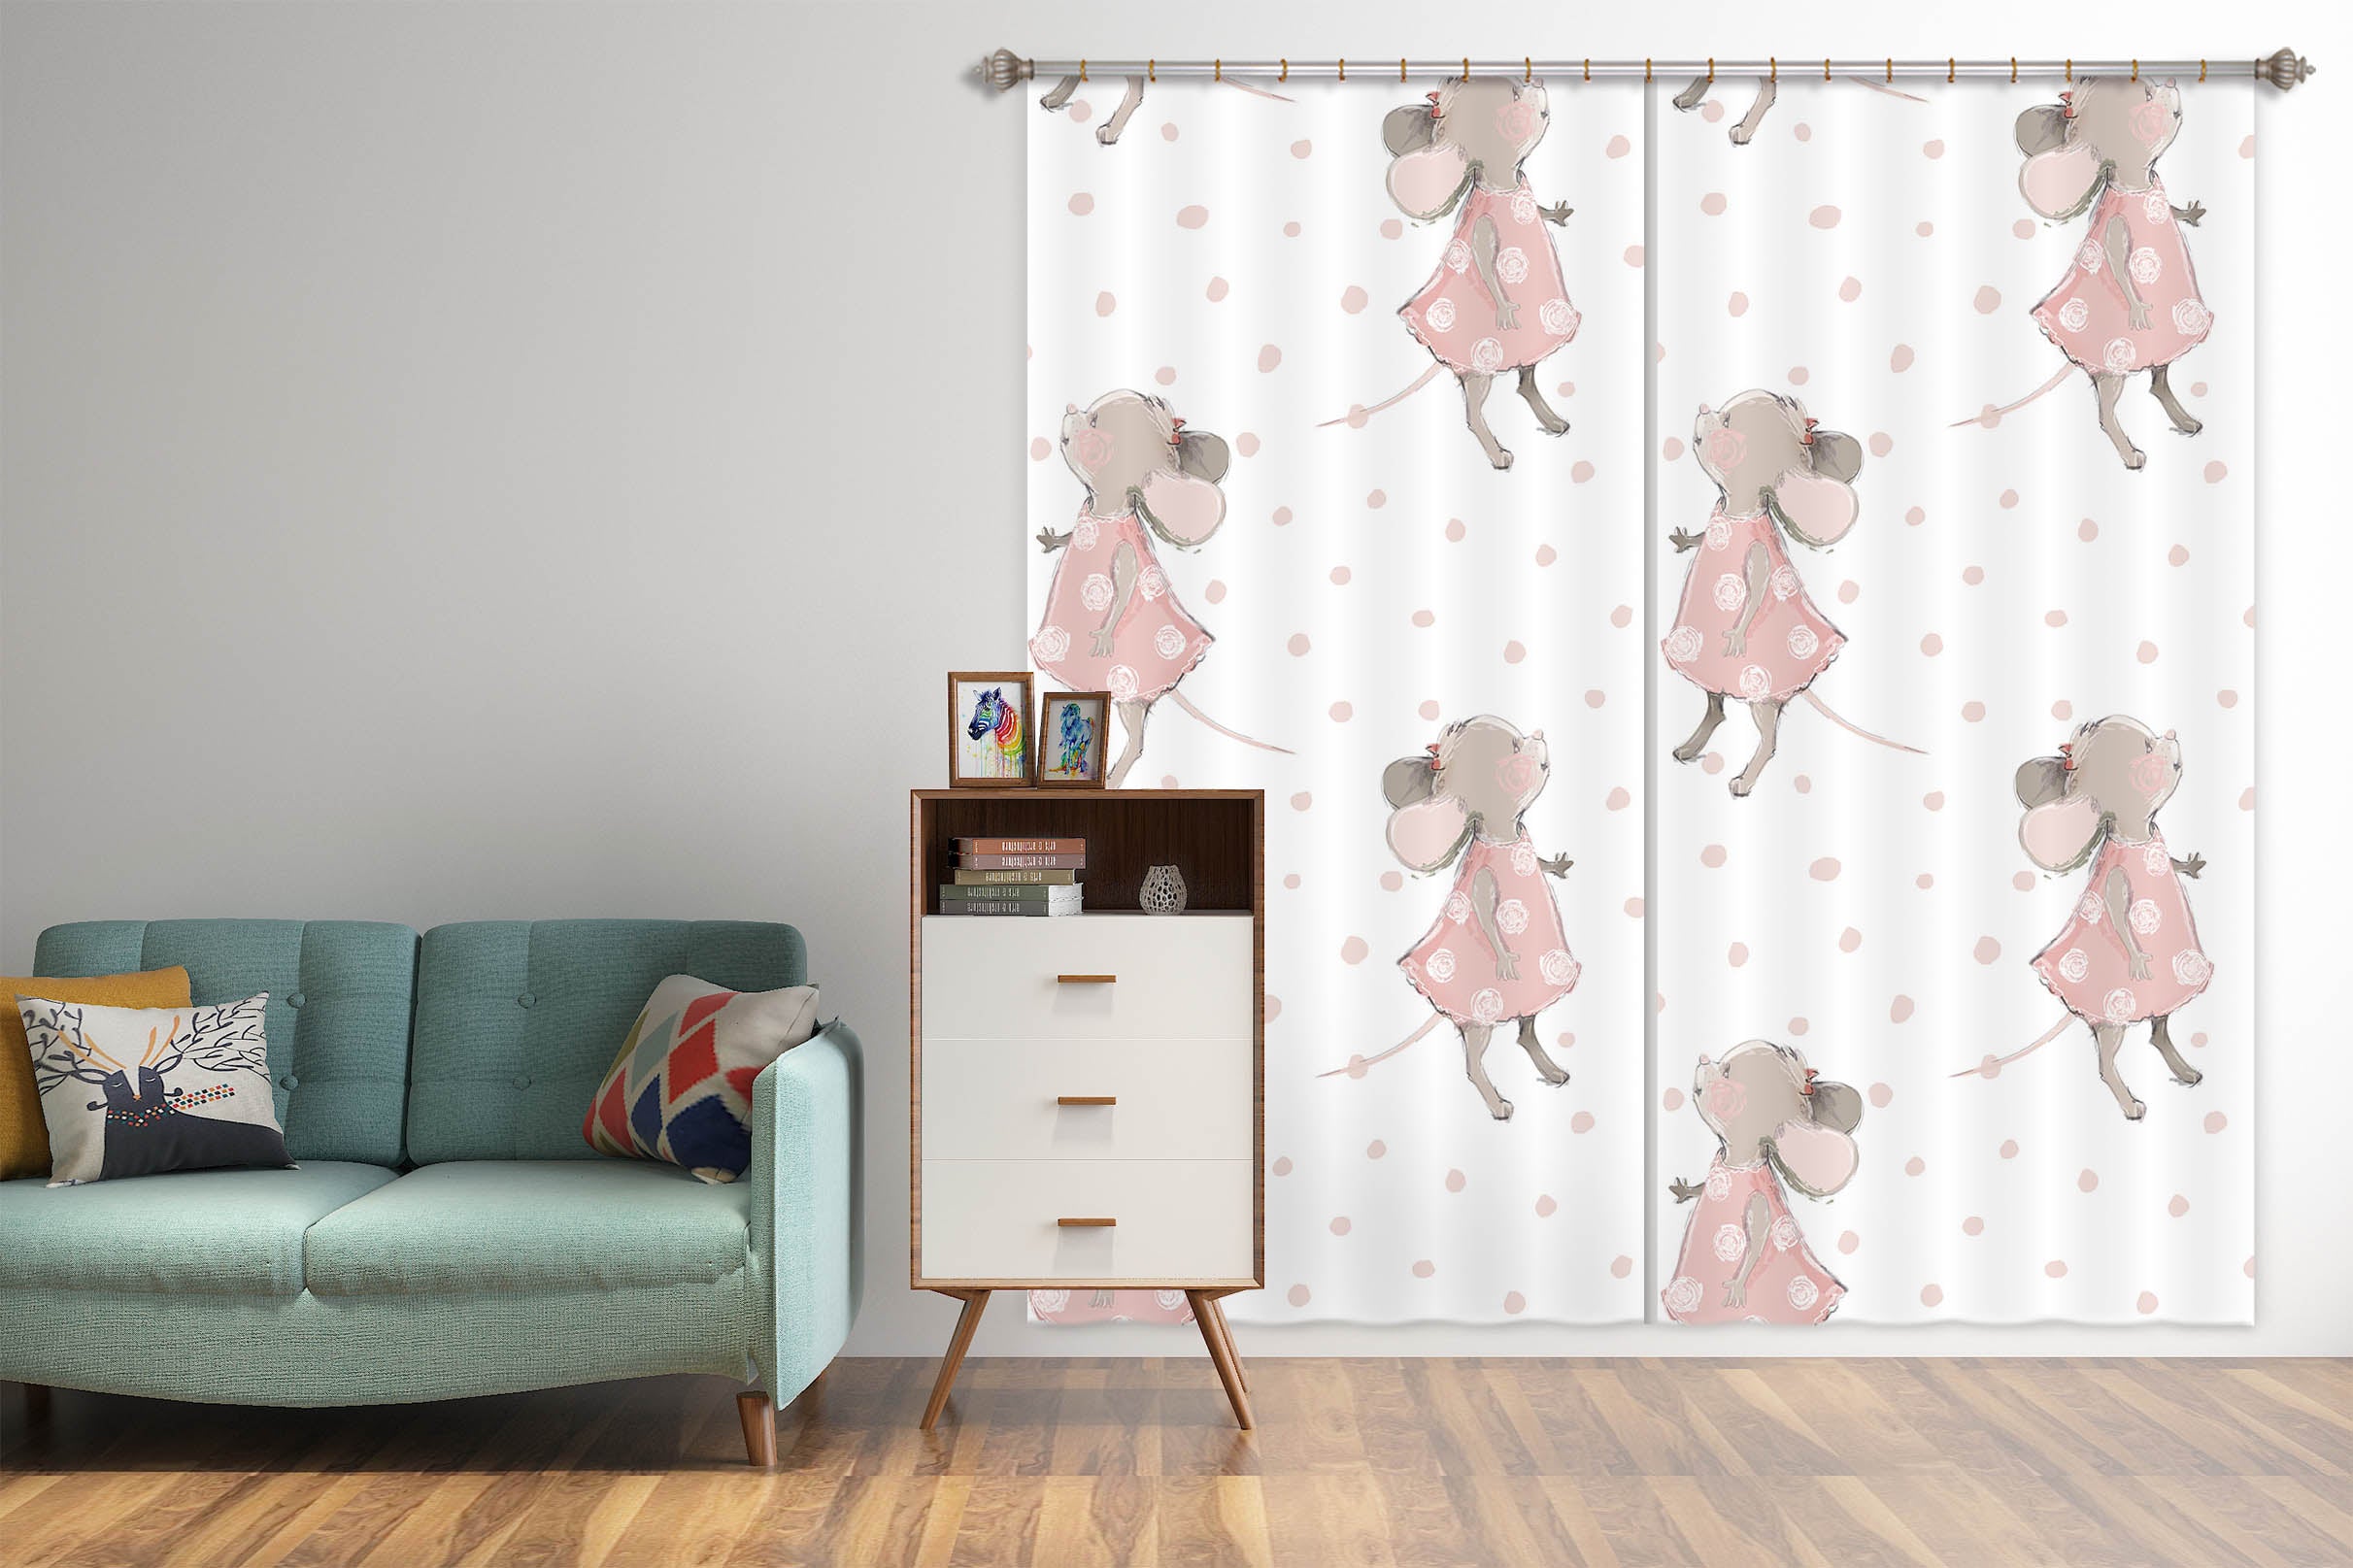 3D Pink Mouse 112 Uta Naumann Curtain Curtains Drapes